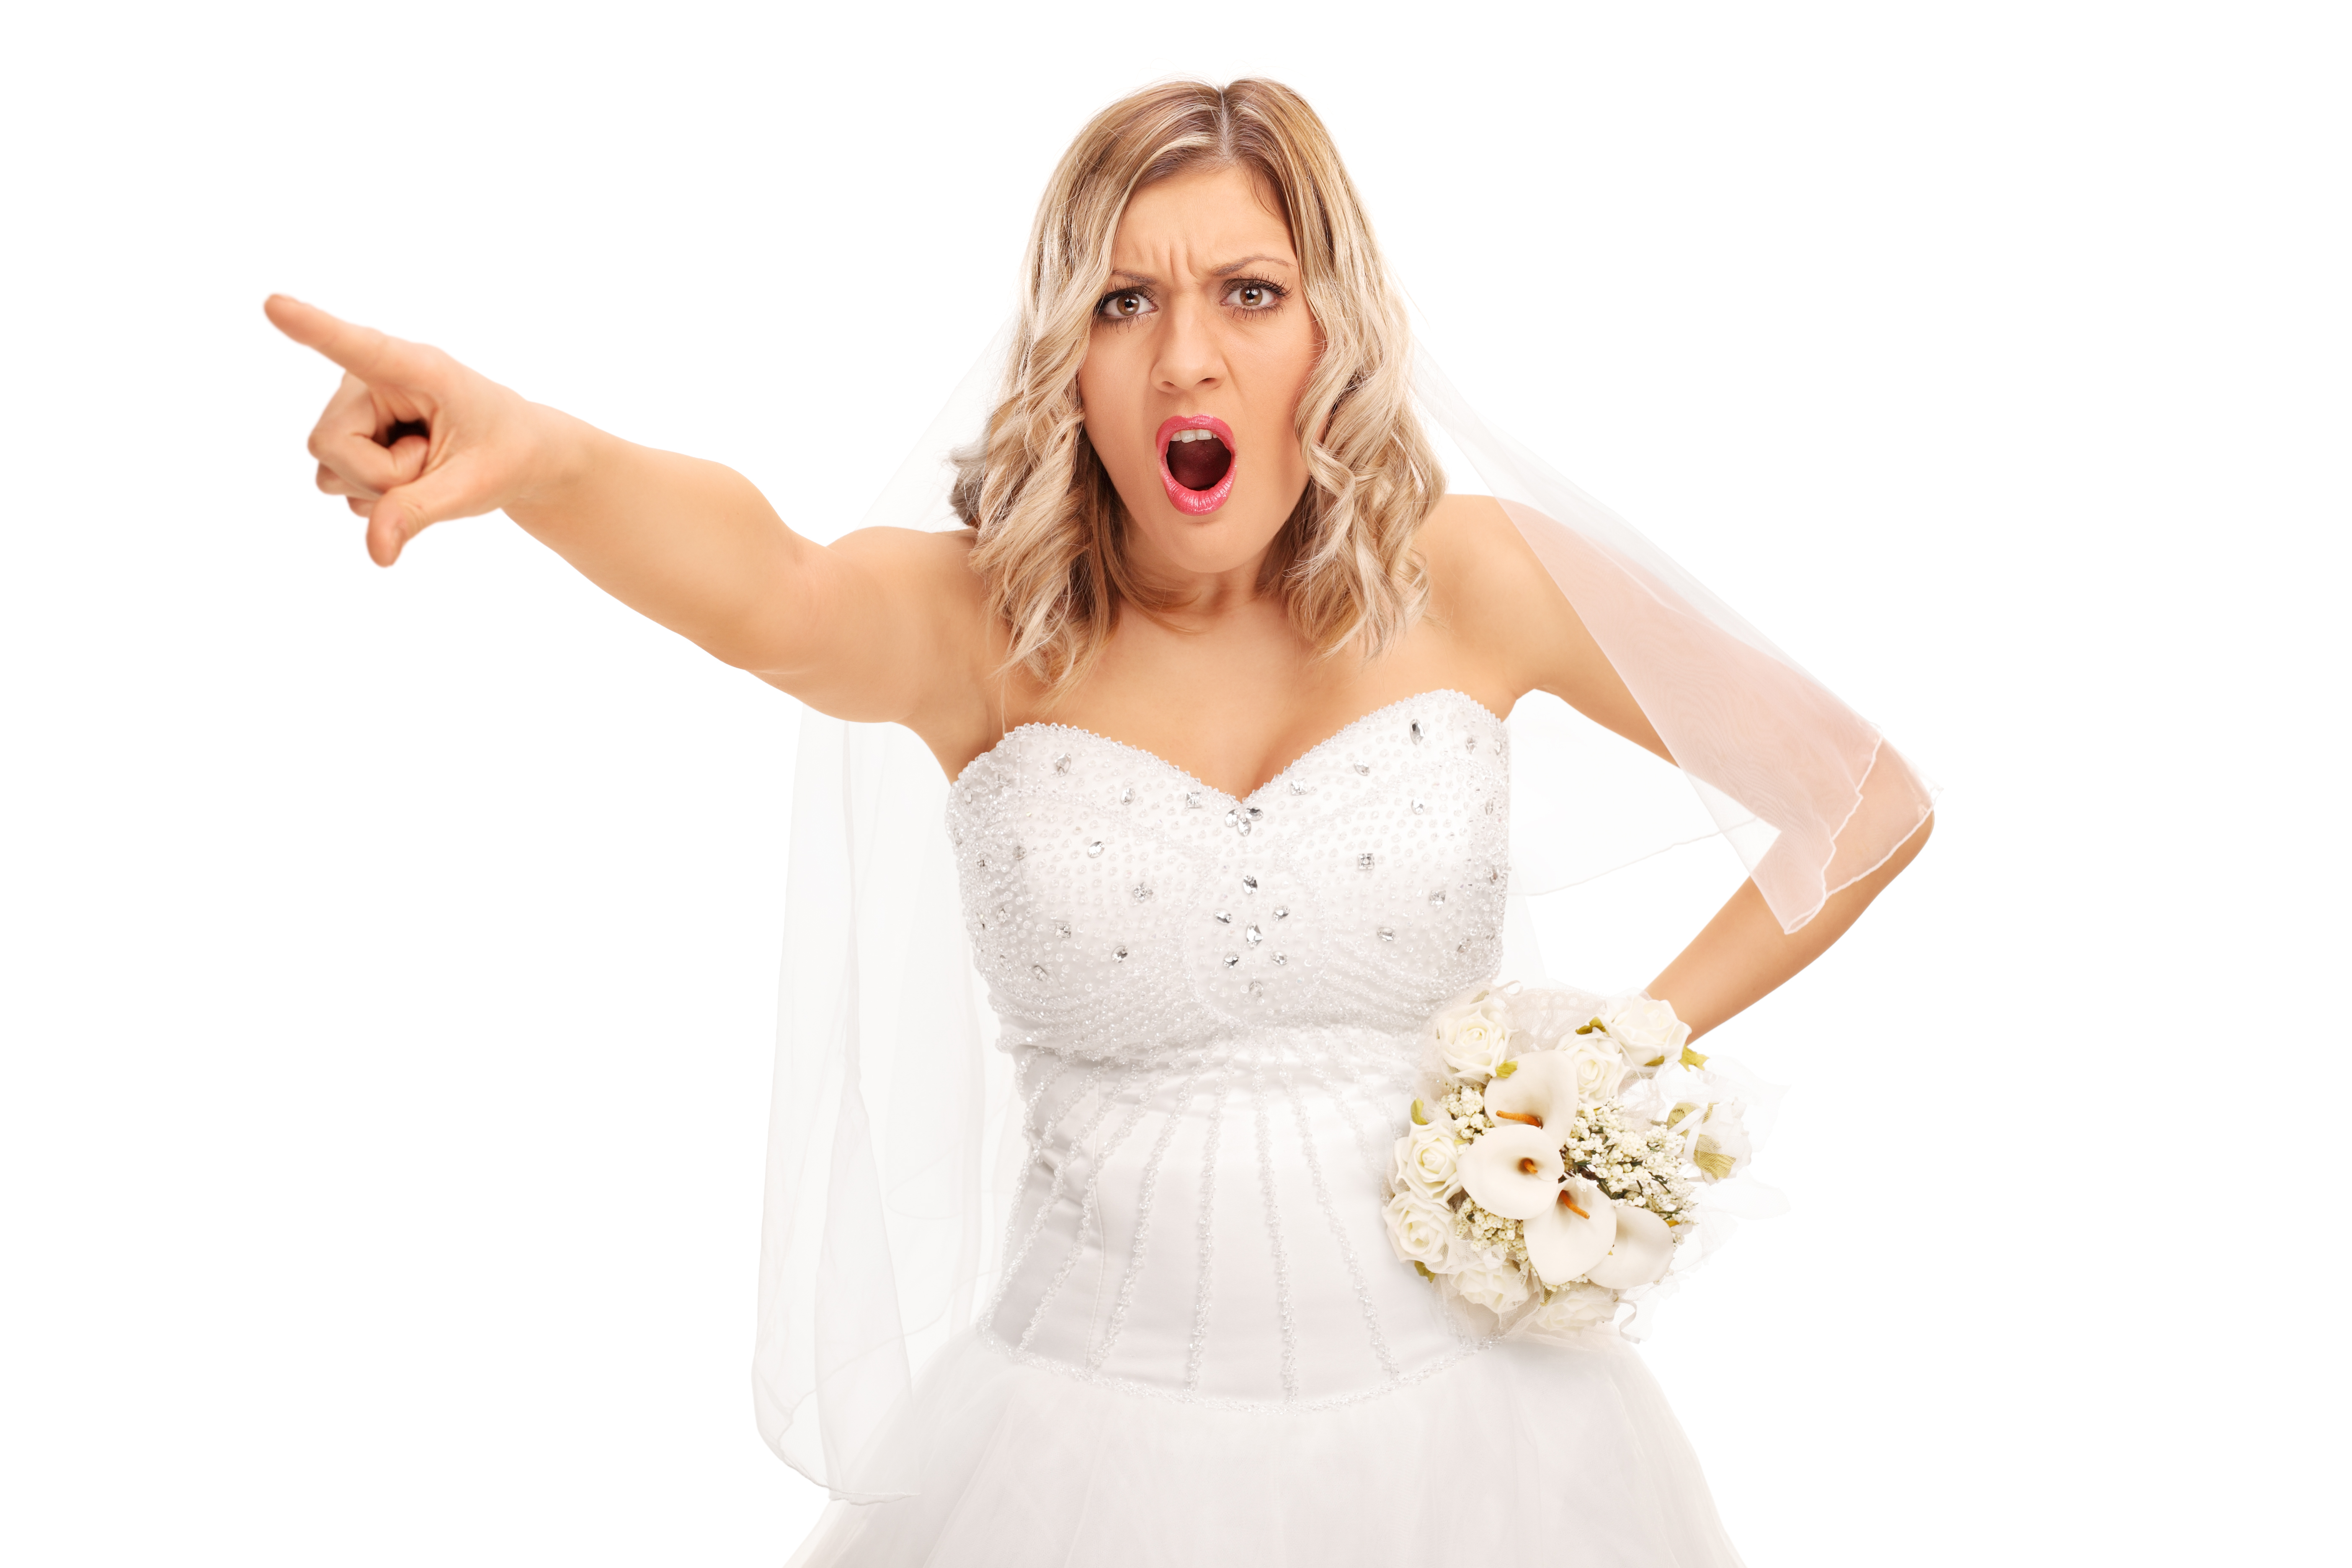 Une mariée en colère qui pointe du doigt et crie | Source : Shutterstock